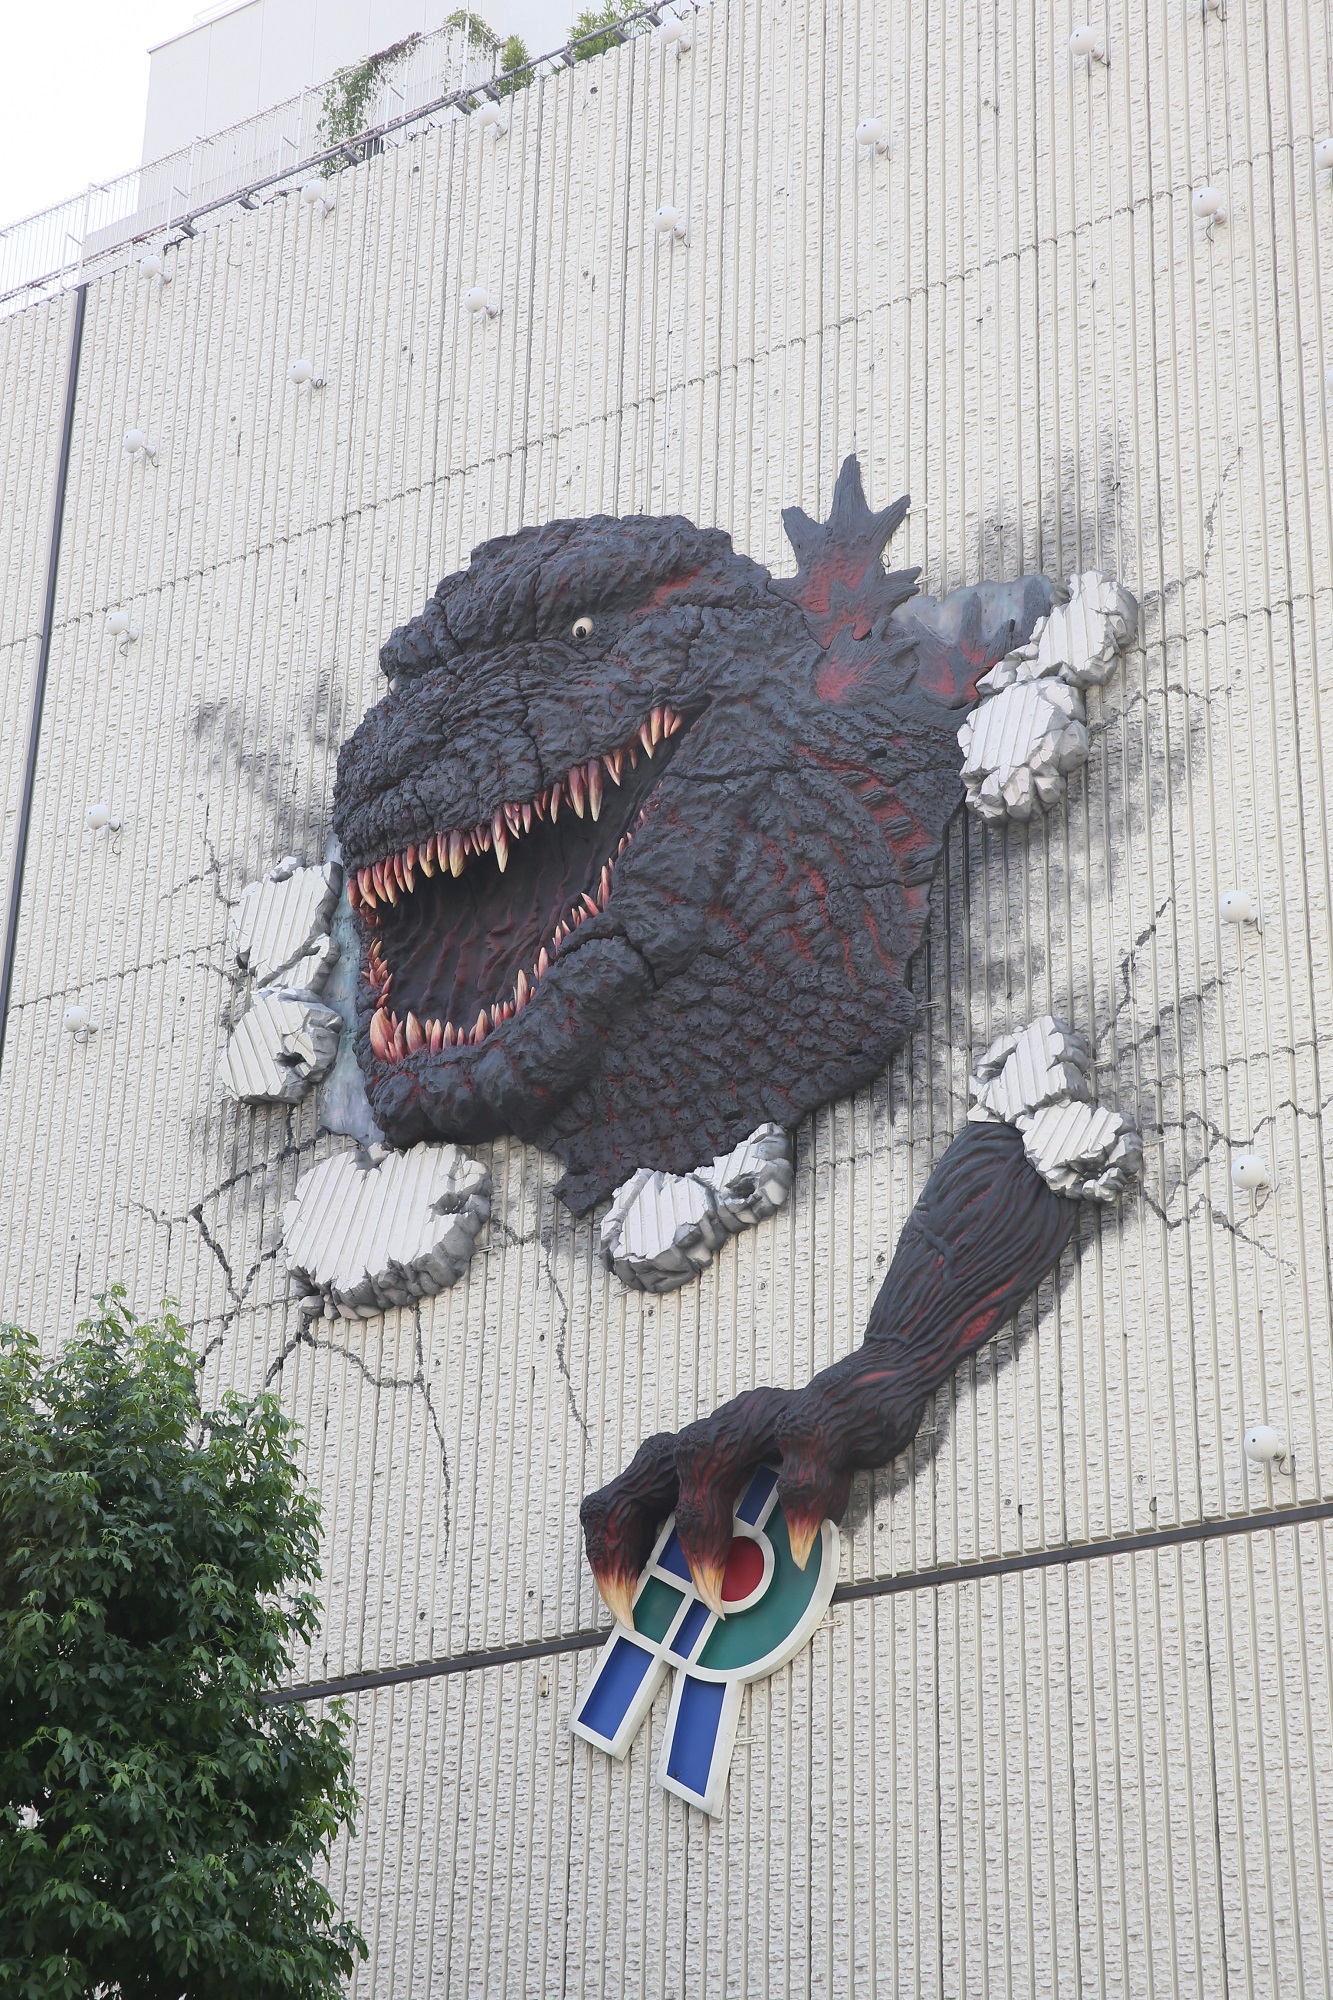 ゴジラ 渋谷パルコを破壊 シン ゴジラ 巨大壁面オブジェが遂に完成 株式会社パルコのプレスリリース